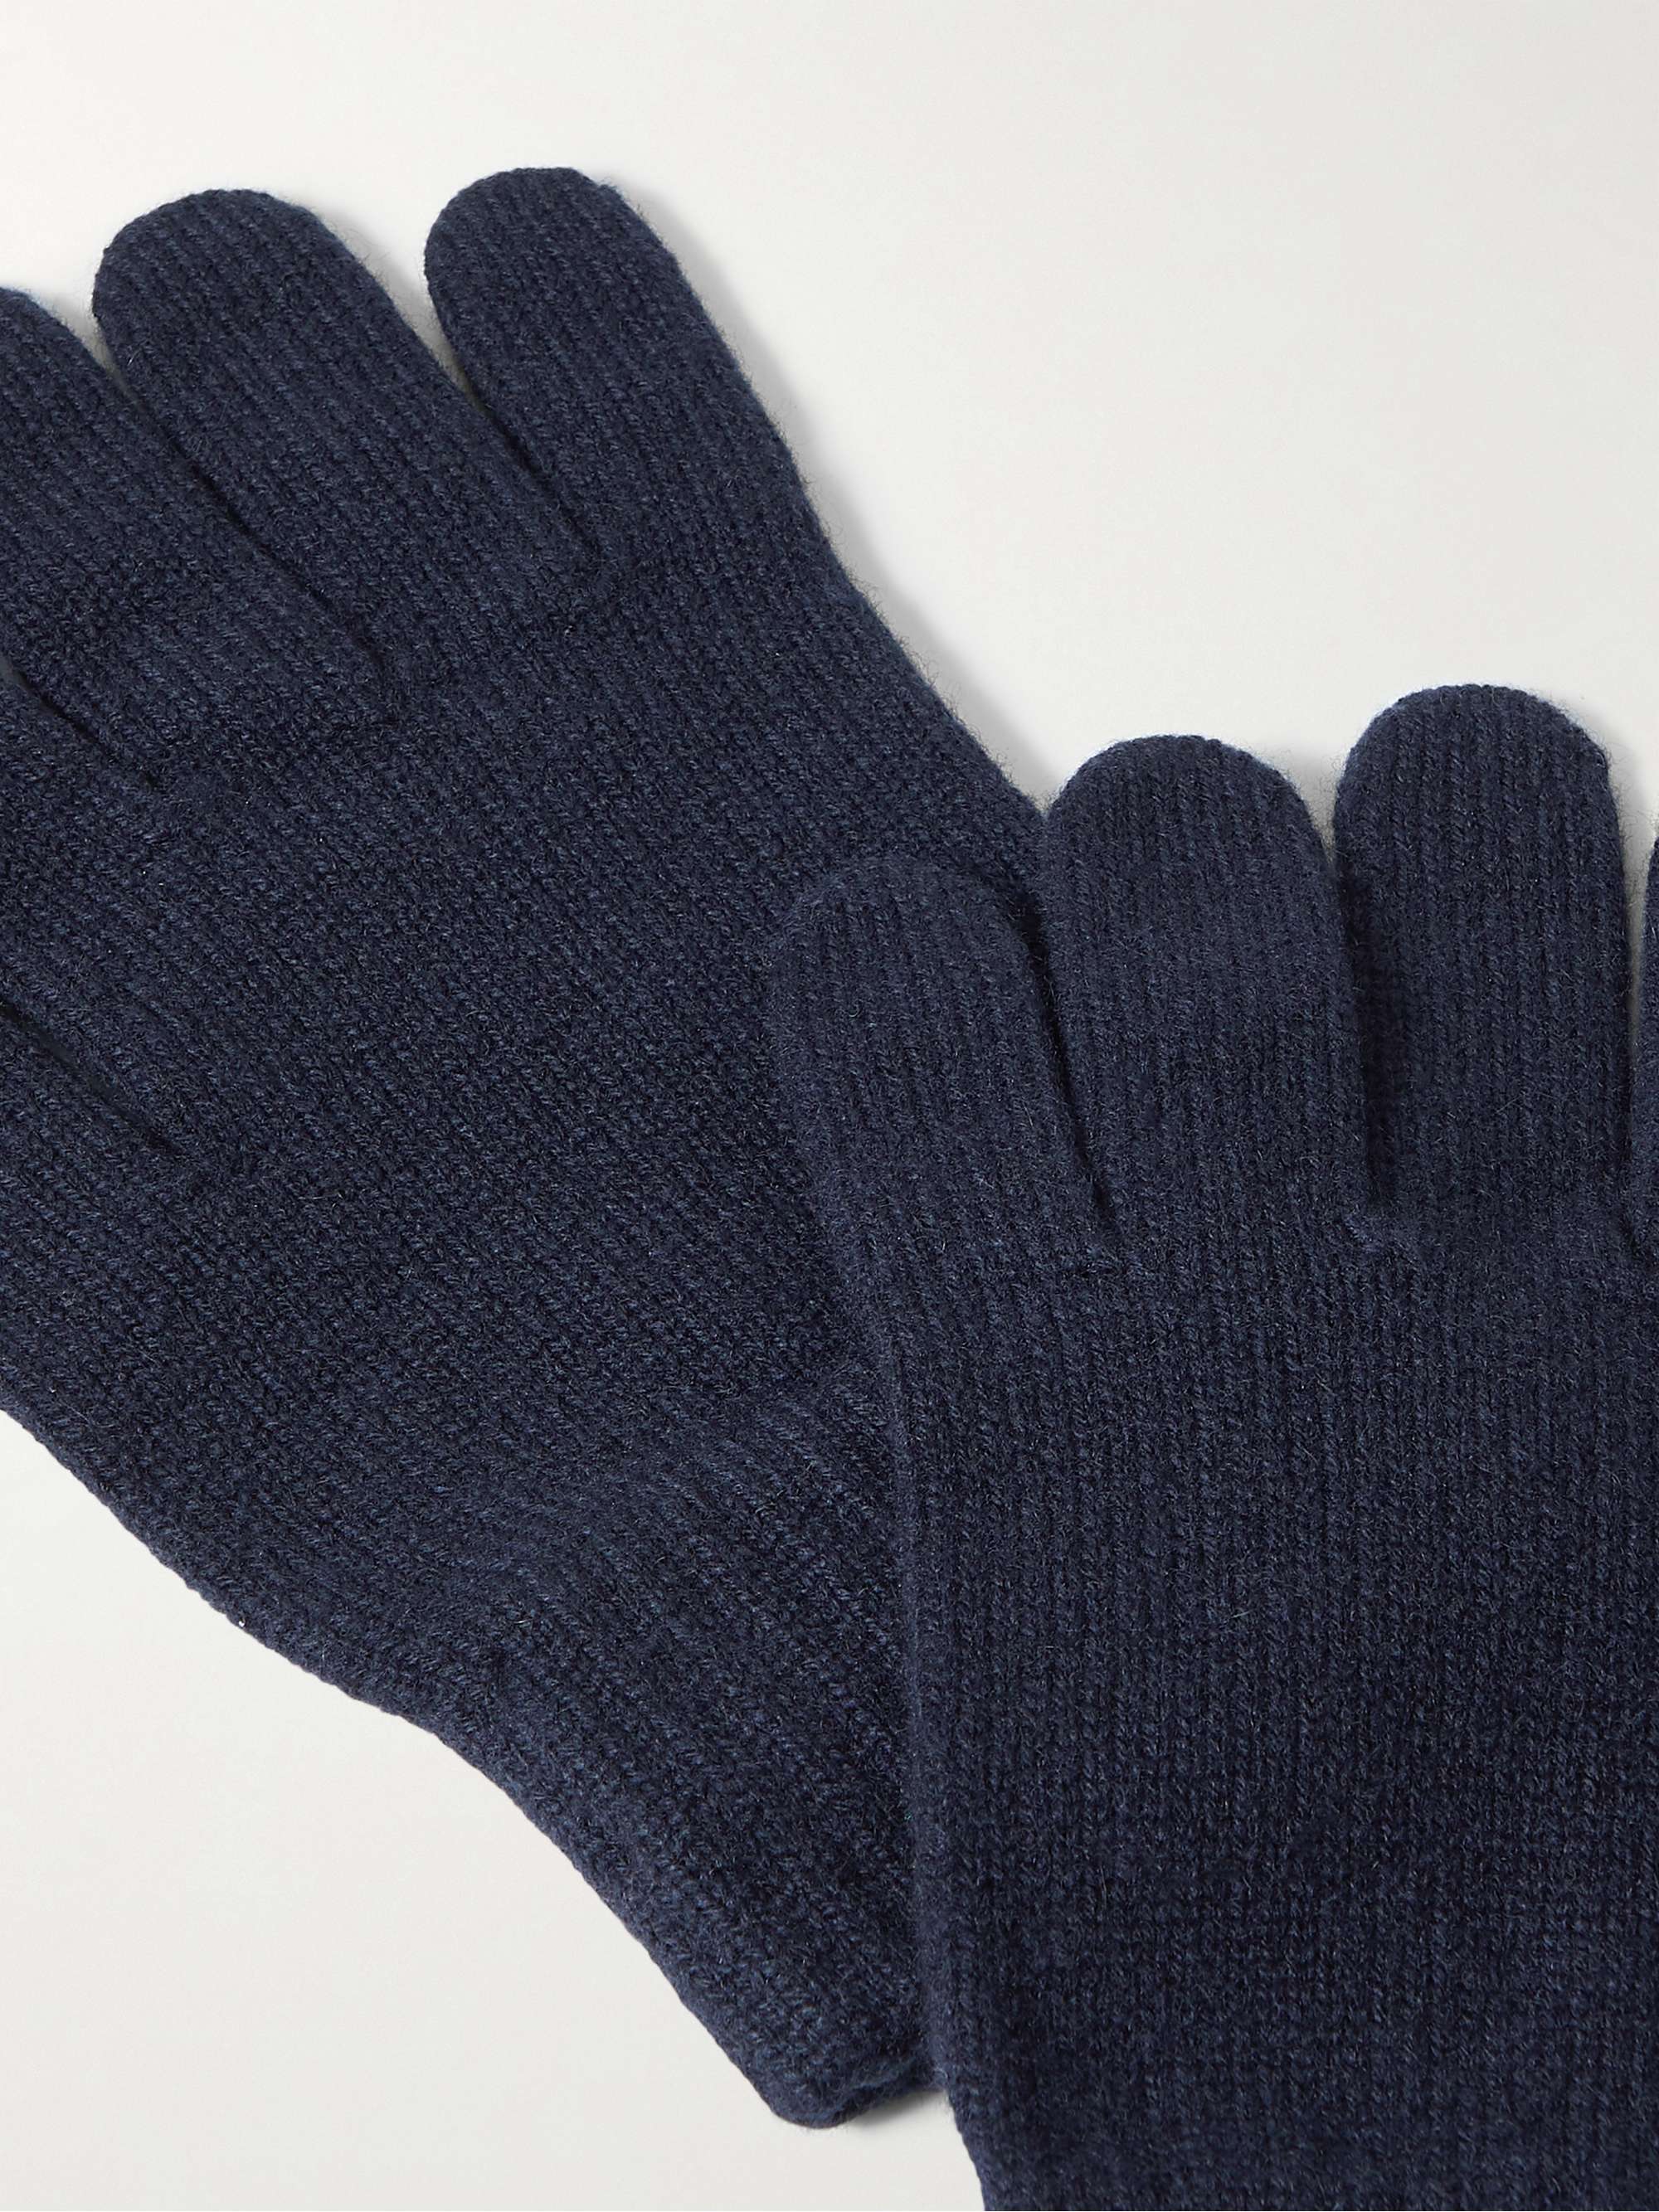 DRAKE'S Cashmere Gloves